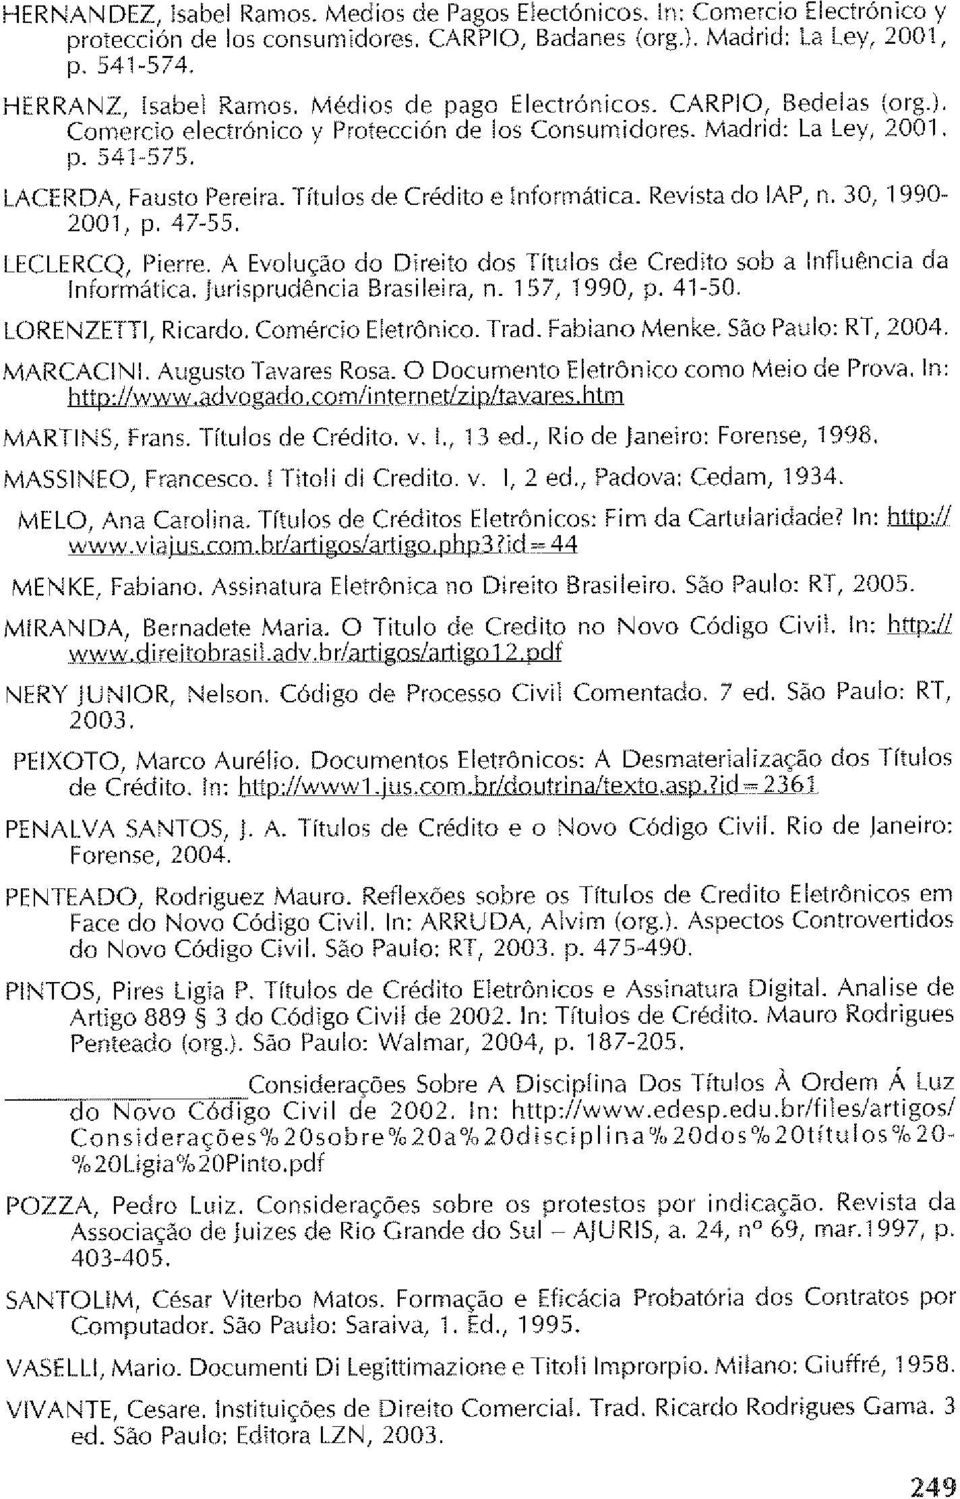 Revista do IAP, n. 30, 1990-2001, p. 47~55. LECLERCQ, Pierre. A Evolução do Direito dos Títulos de Credito sob a Influência da Informática. jurisprudência Brasileira, n. 157, 1990, p. 41-50.